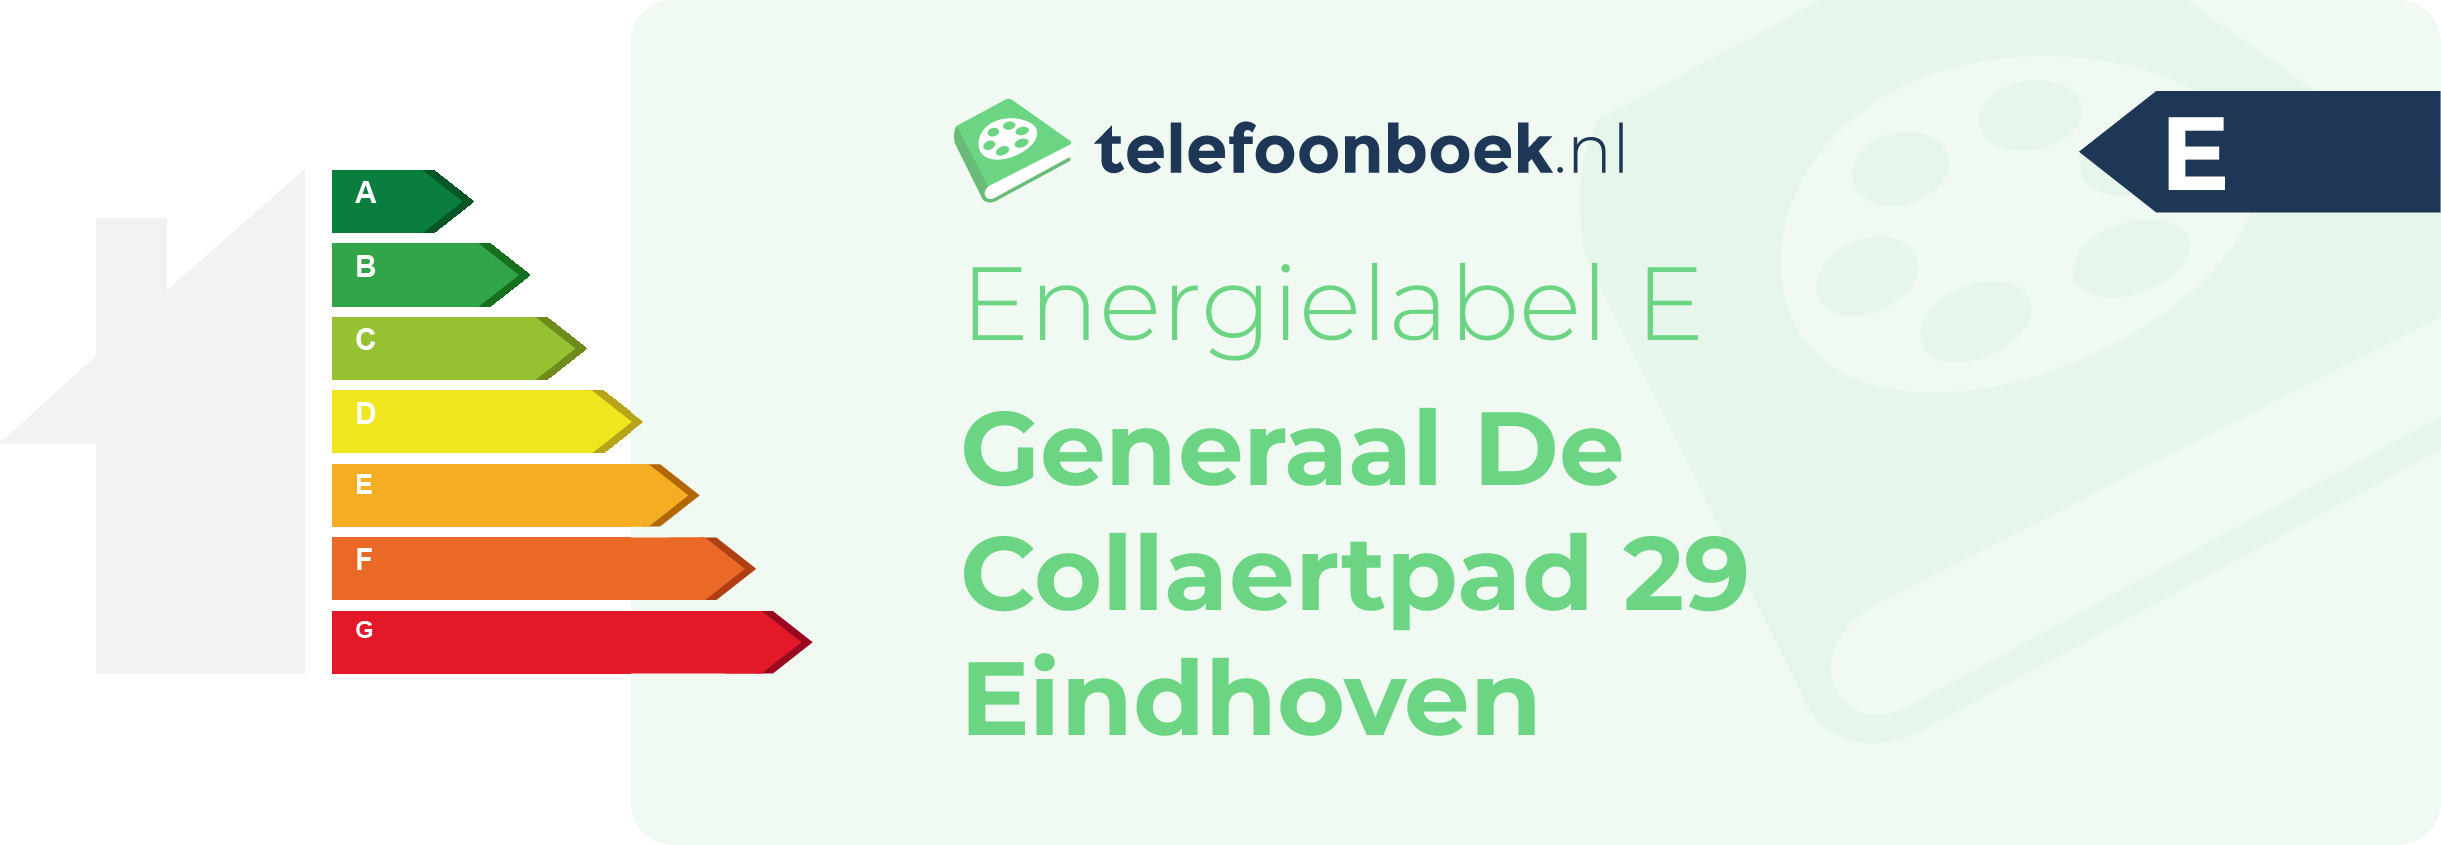 Energielabel Generaal De Collaertpad 29 Eindhoven